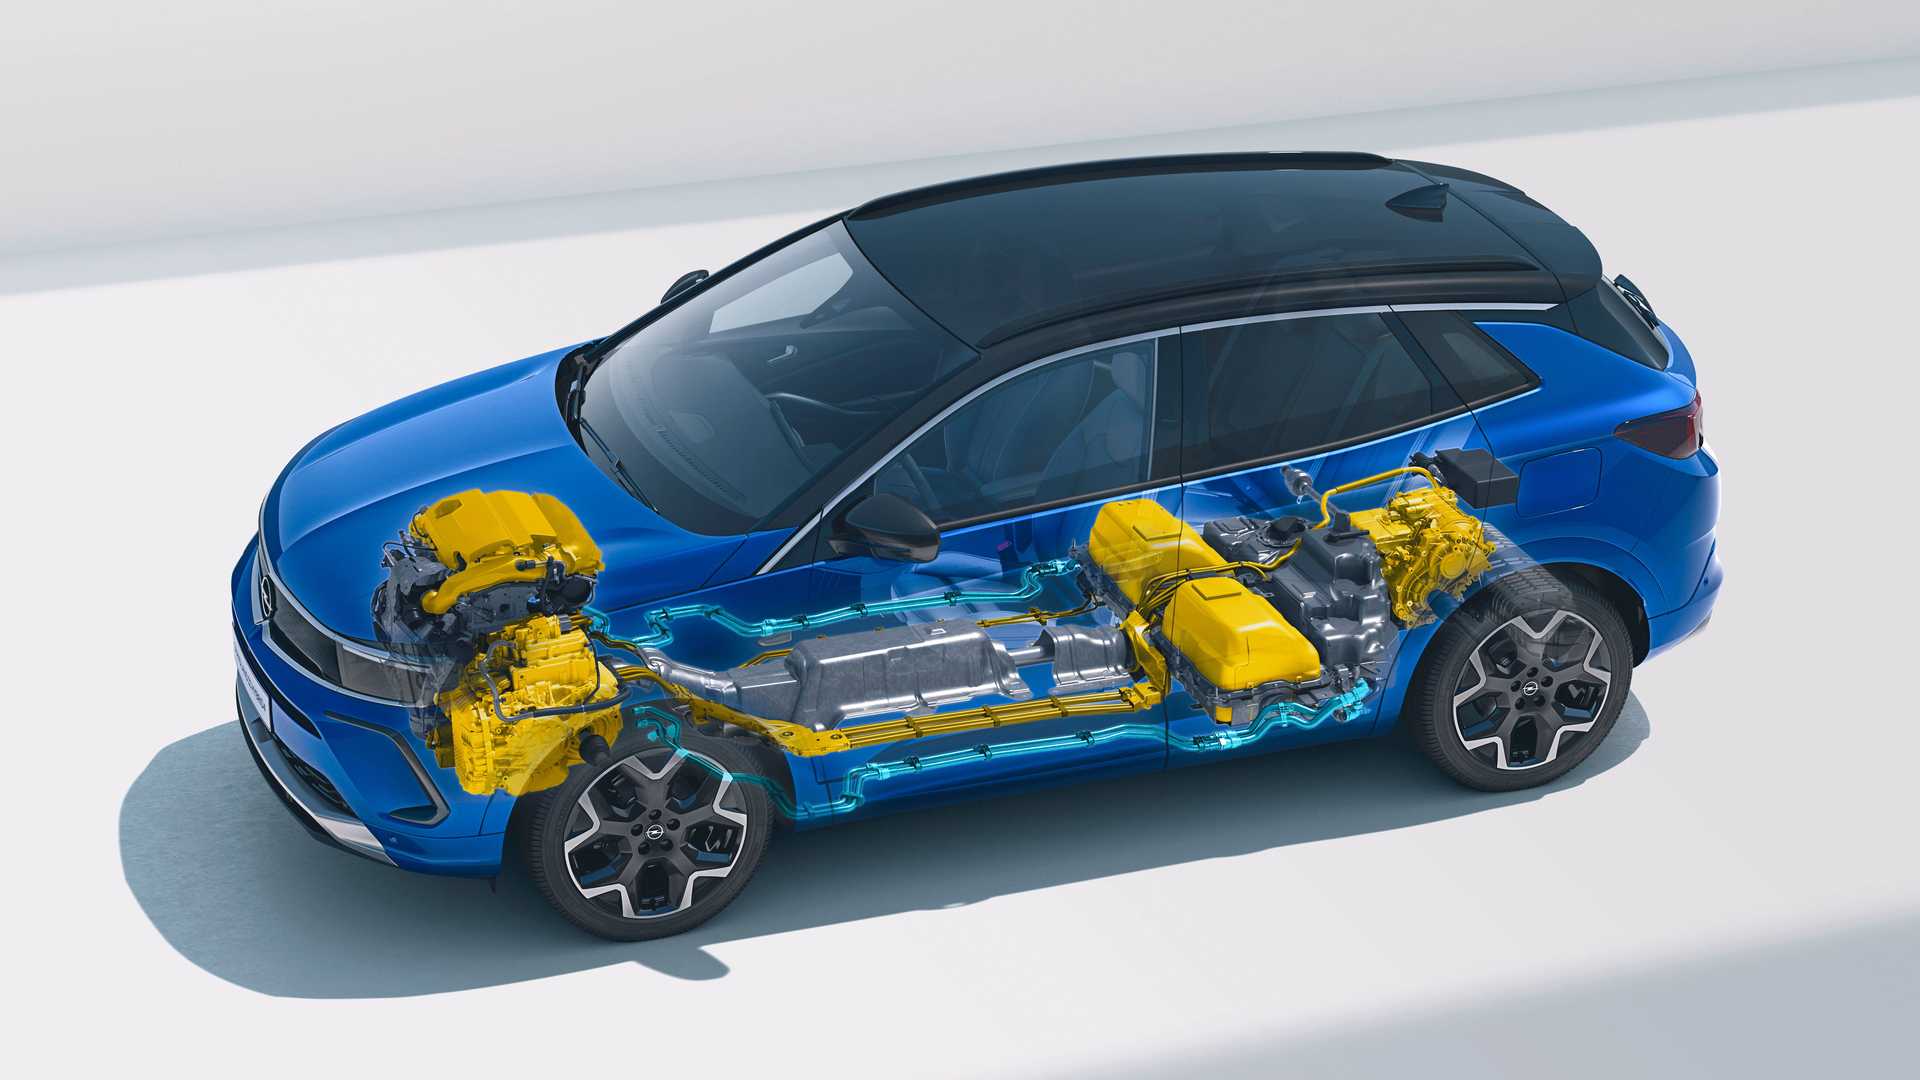 نمای جانبی فیس لیفت کراس اور اوپل گرندلند 2022 / 2022 Opel Grandland crossover آبی رنگ